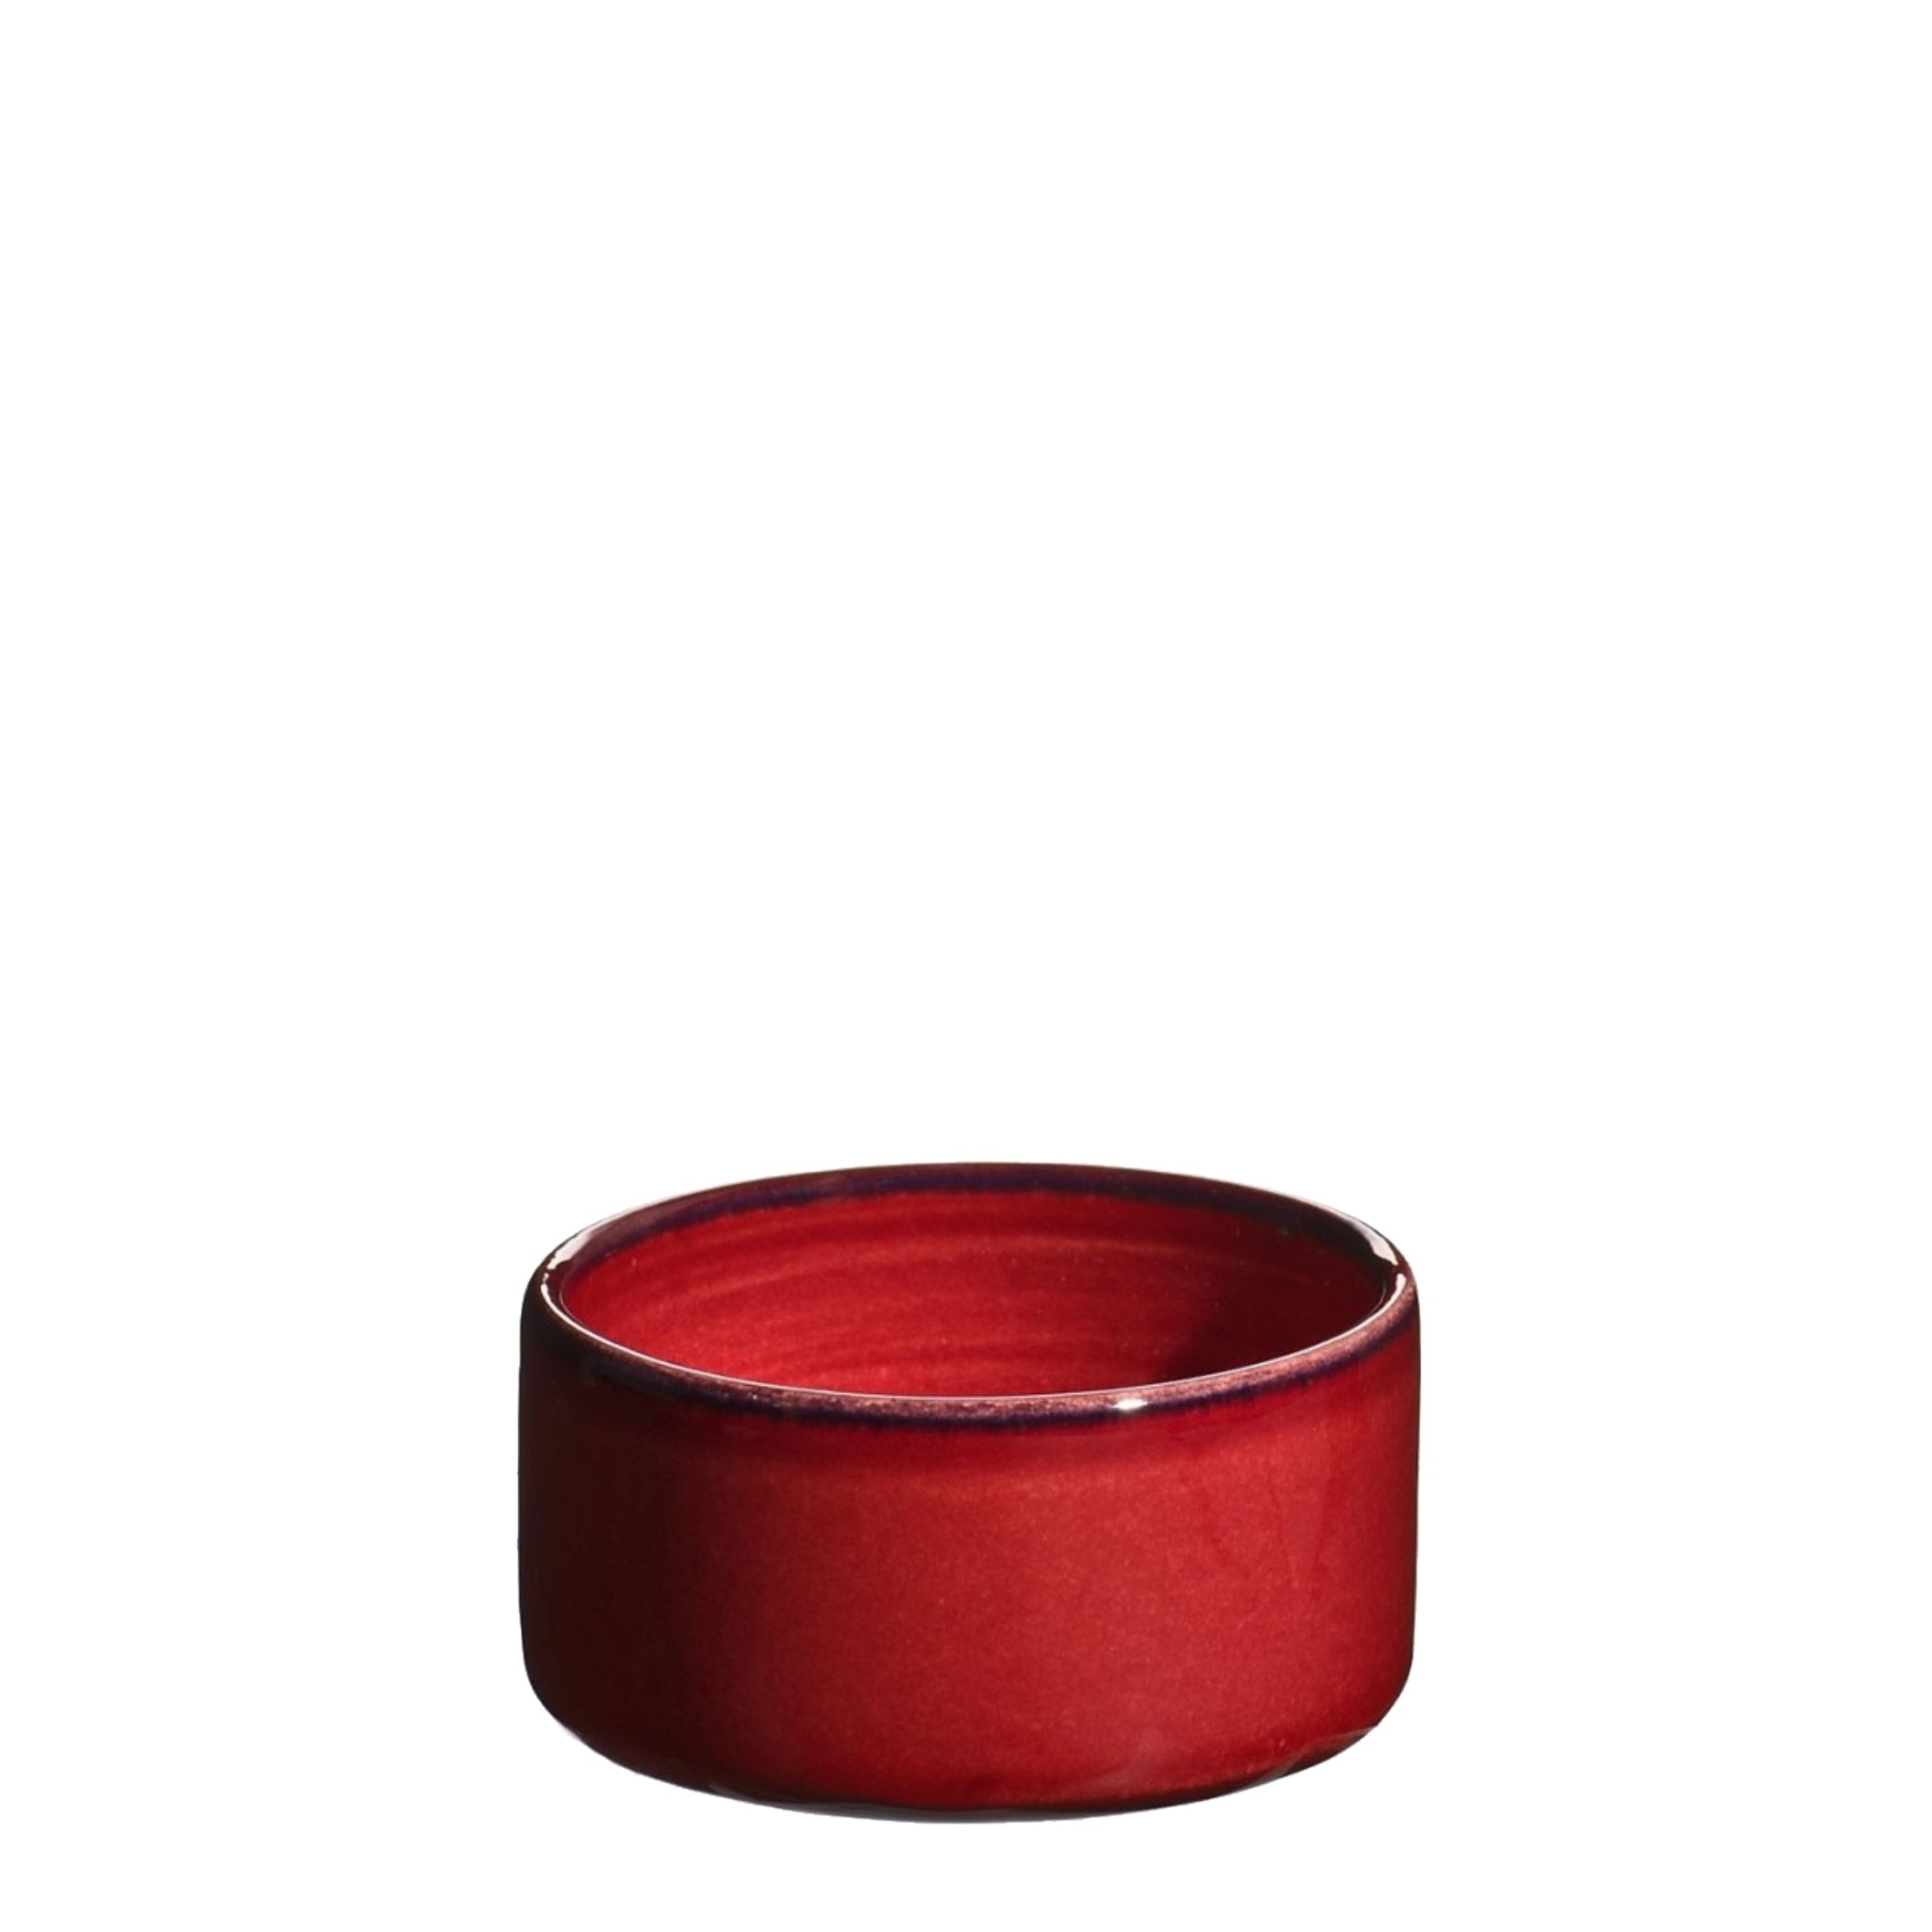 Rød lille håndlavet keramikskål fra Atelier Bernex, Oliviers & Co